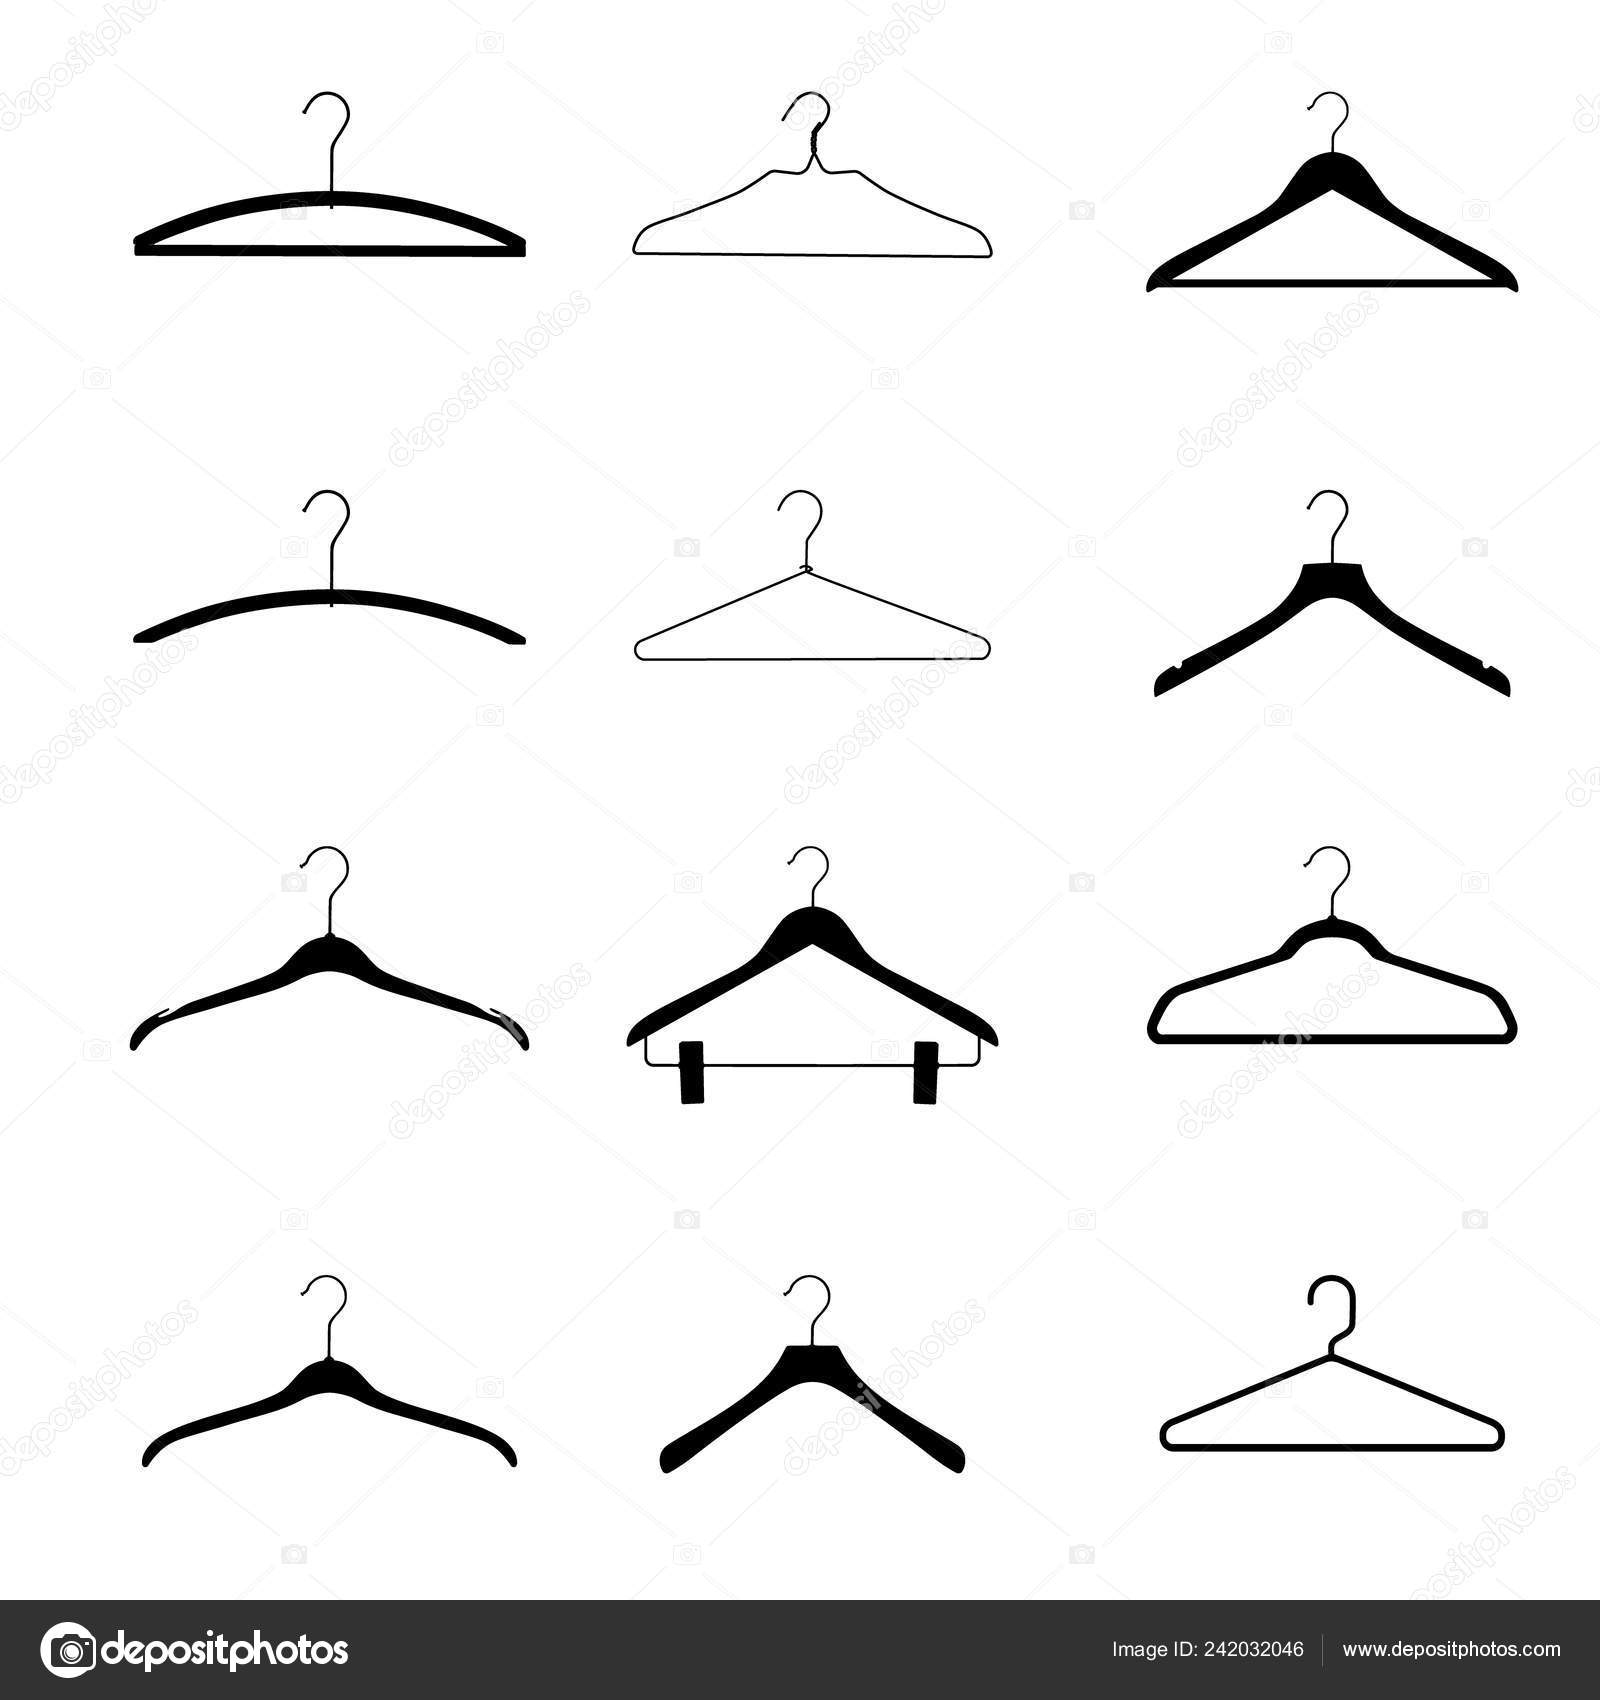 Wire Coat Hangers - White